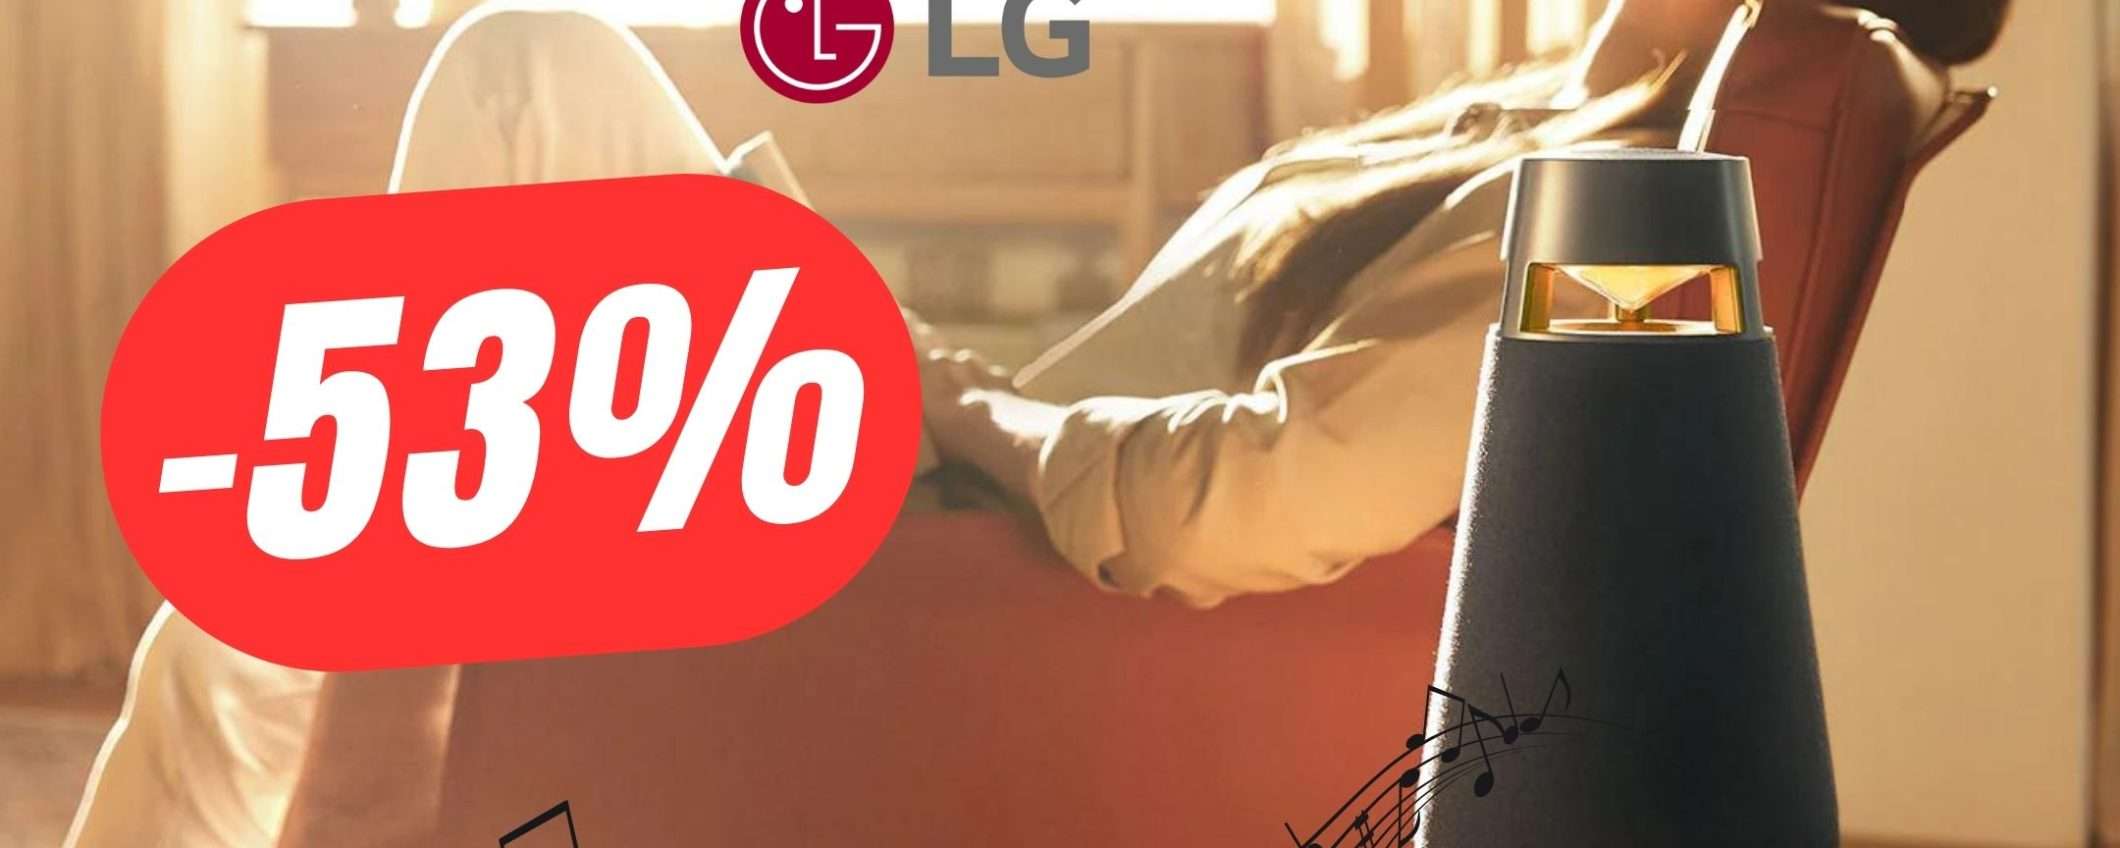 L'affascinante Cassa Bluetooth di LG a un PREZZO FOLLE (-53%)